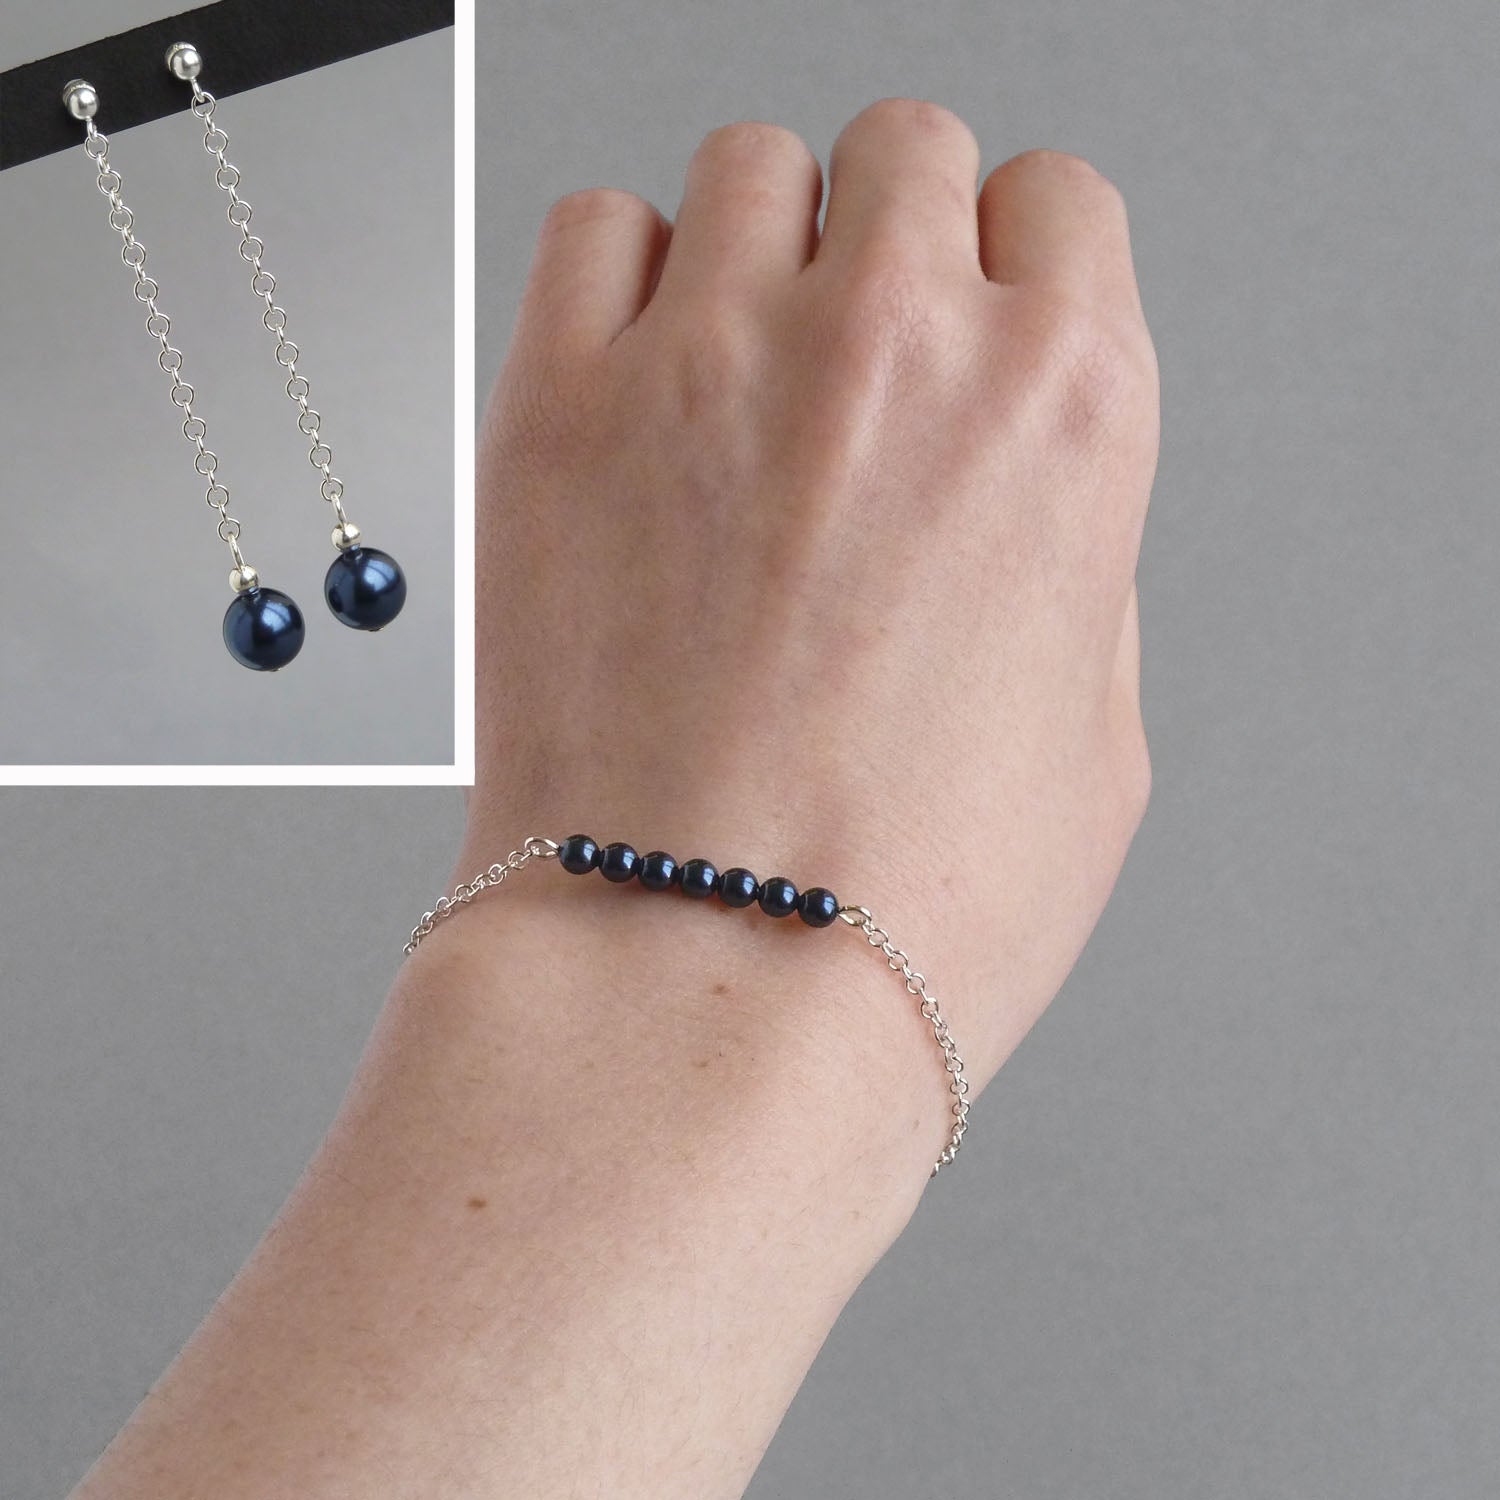 Navy pearl bracelet and earrings set